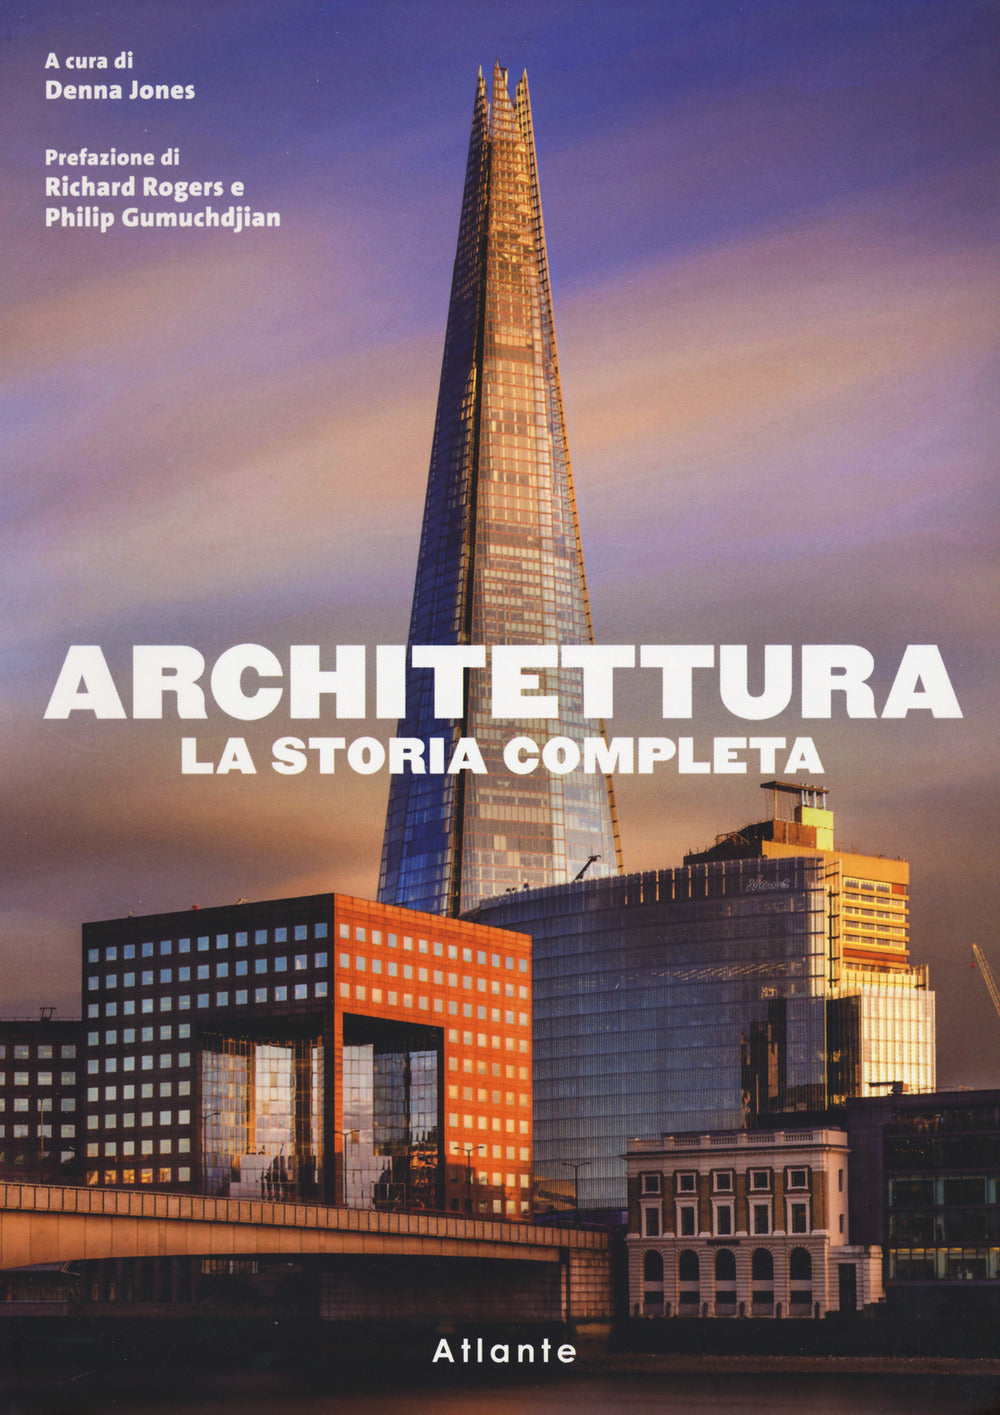 Architettura. La storia completa